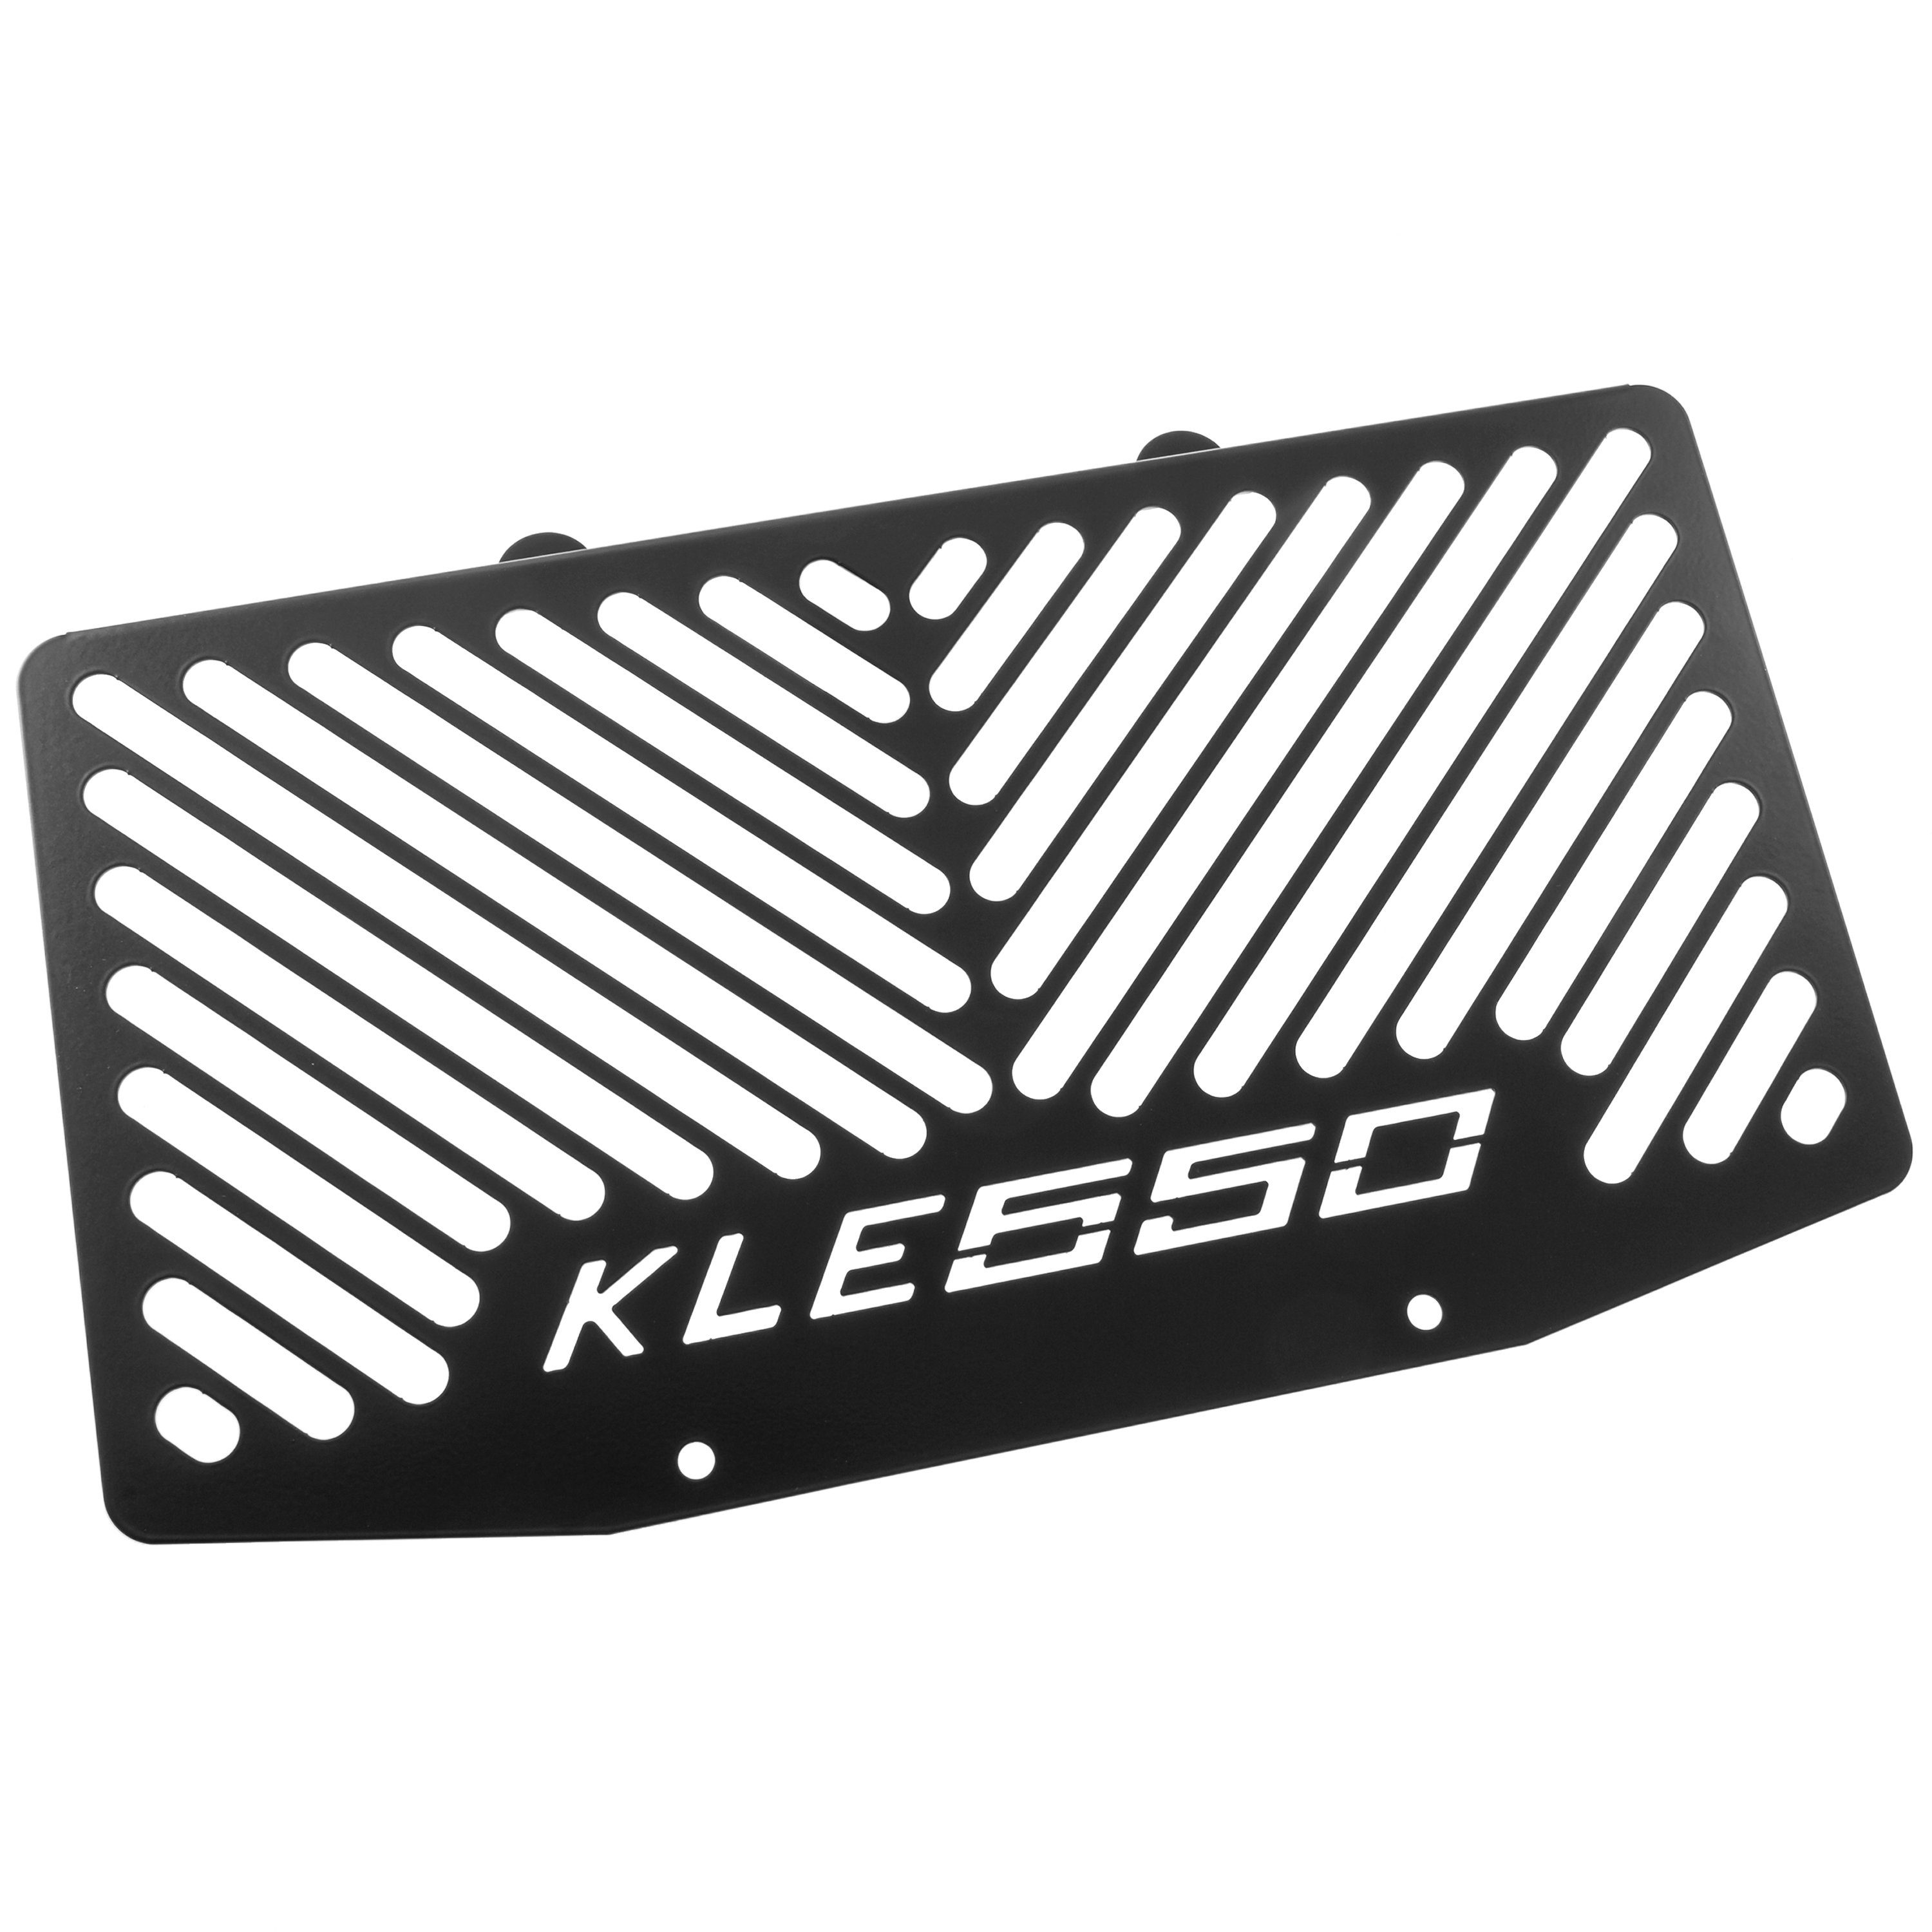 ZIEGER Motorrad-Additiv Kühlerabdeckung für Kawasaki Versys 650 Logo schwarz, Motorradkühlerabdeckung